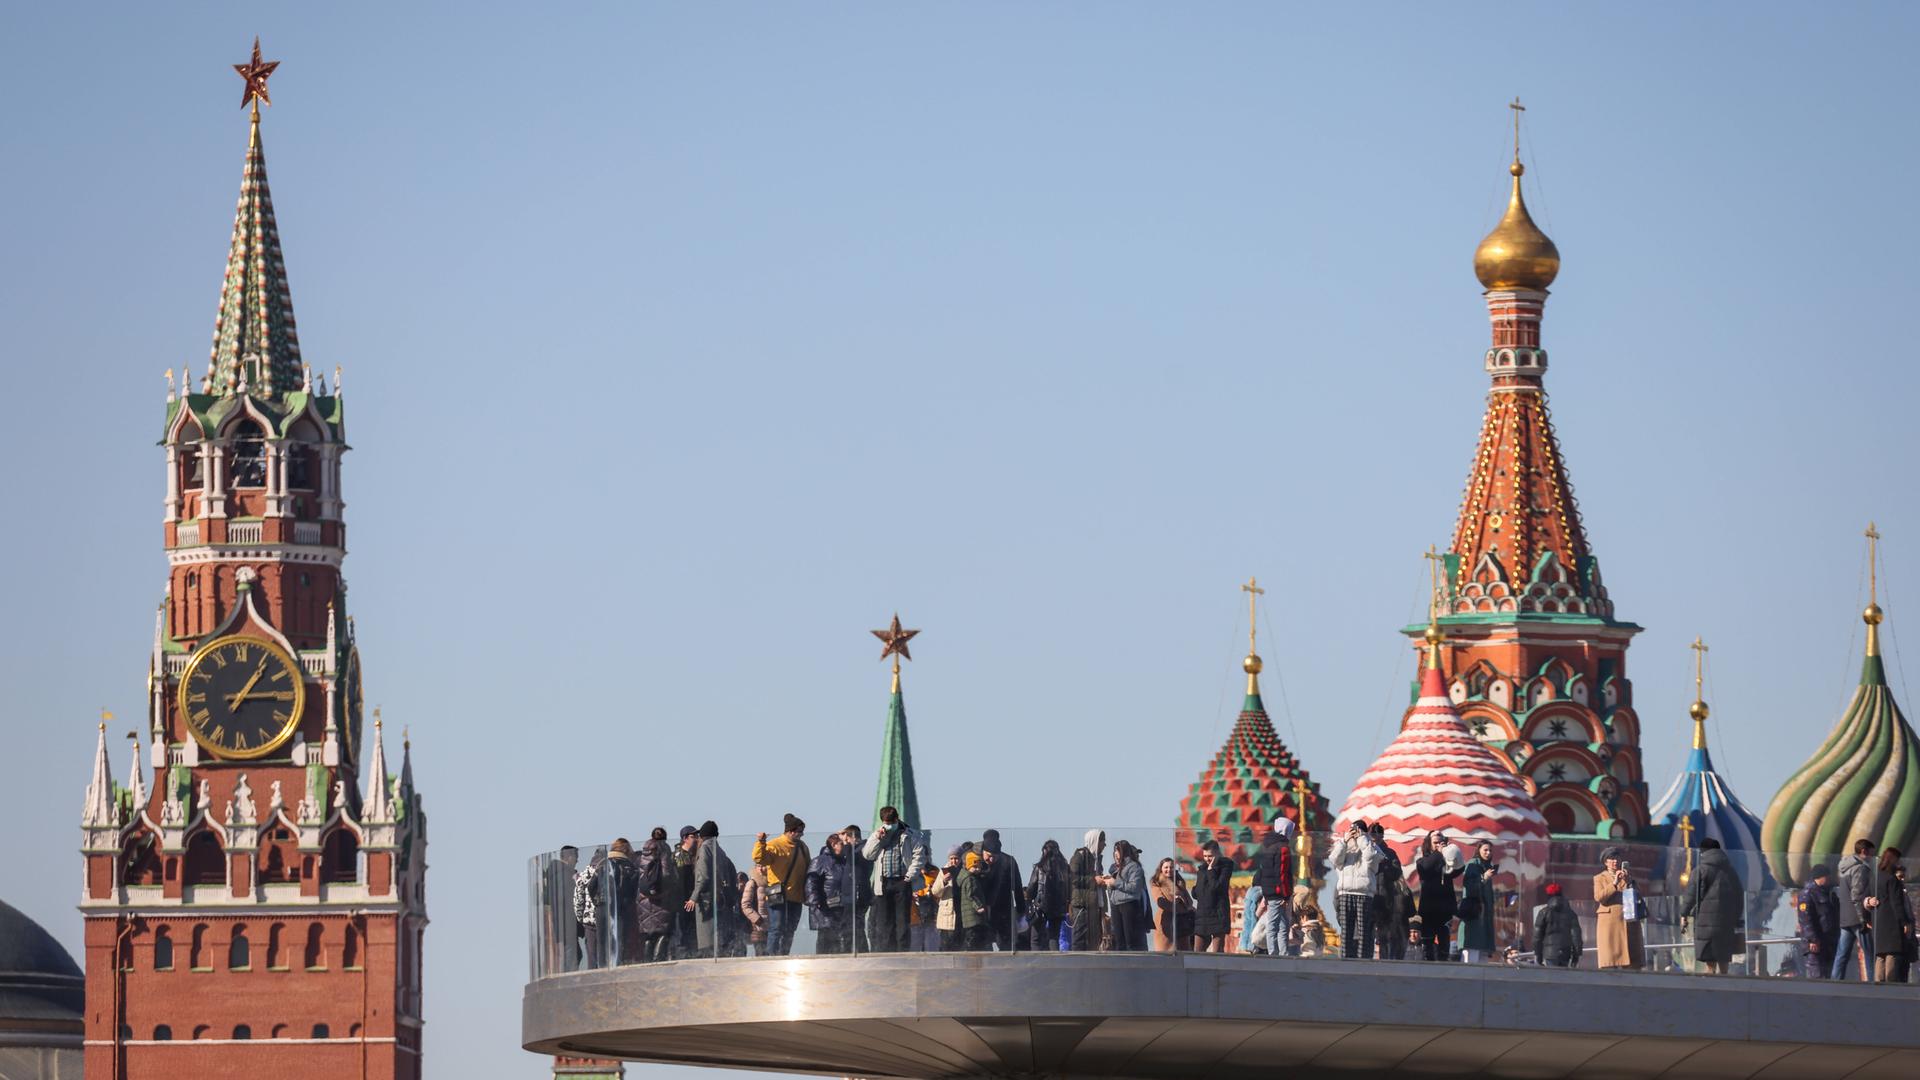 Ein Blick auf den Spasskaya-Turm des Moskauer Kremls, eine Aussichtsplattform im Zaryadye-Park und die Kuppeln der Basilius-Kathedrale 